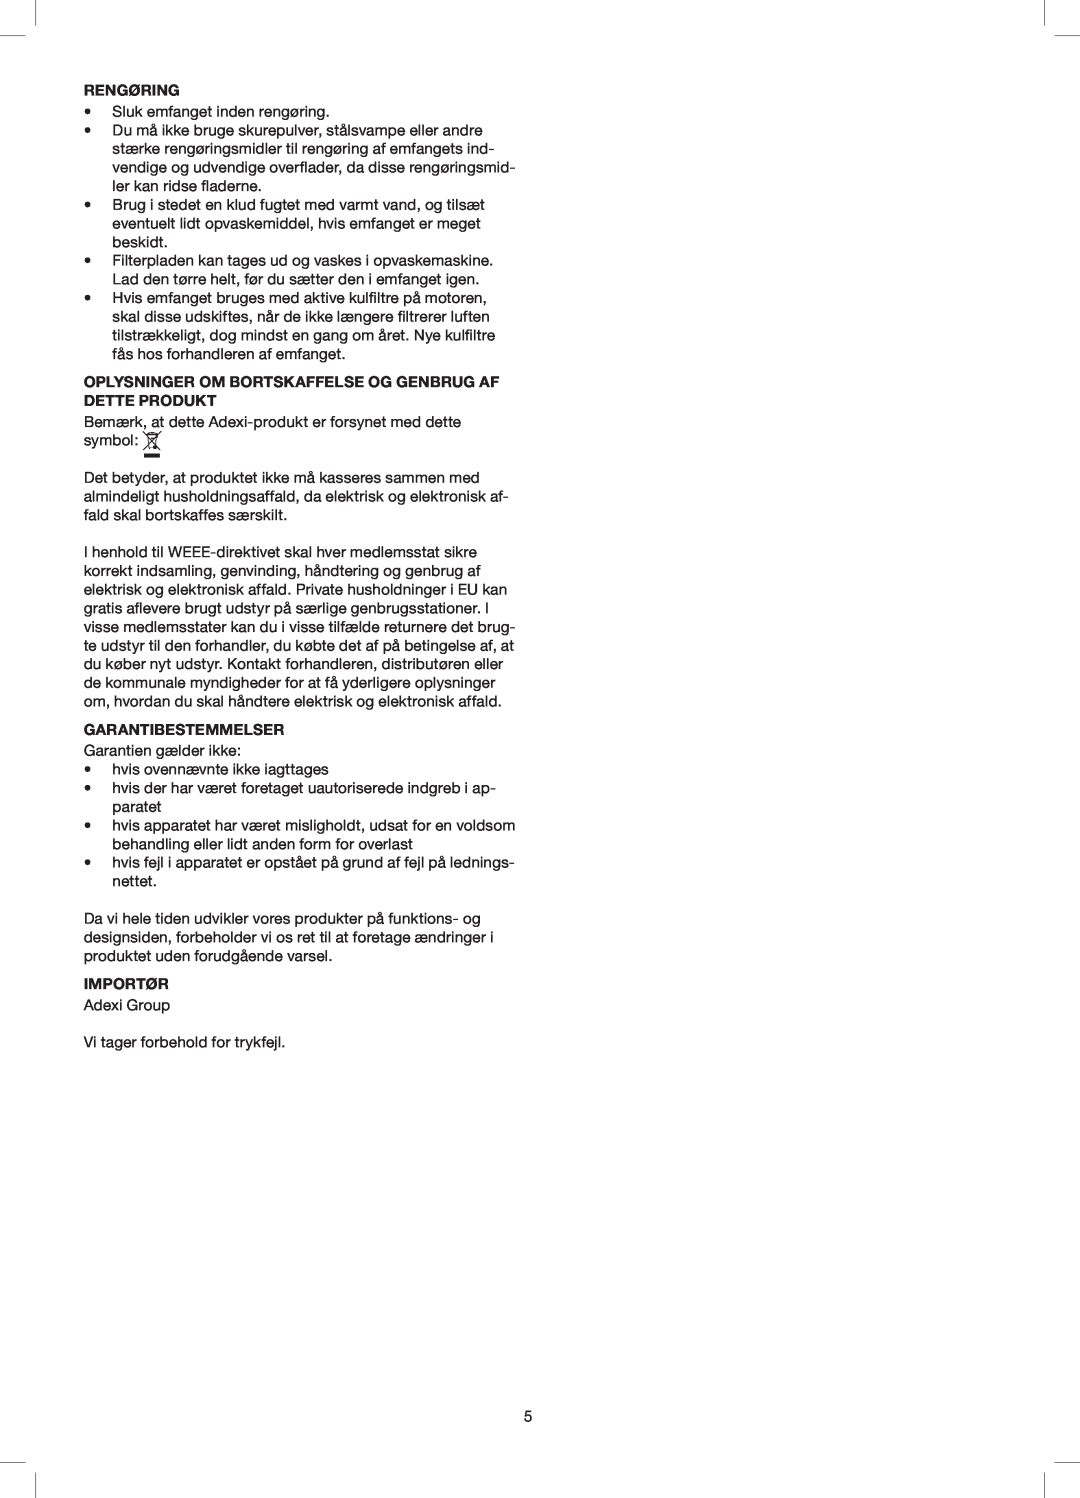 Melissa 258-014 manual Rengøring, Oplysninger Om Bortskaffelse Og Genbrug Af Dette Produkt, Garantibestemmelser, Importør 